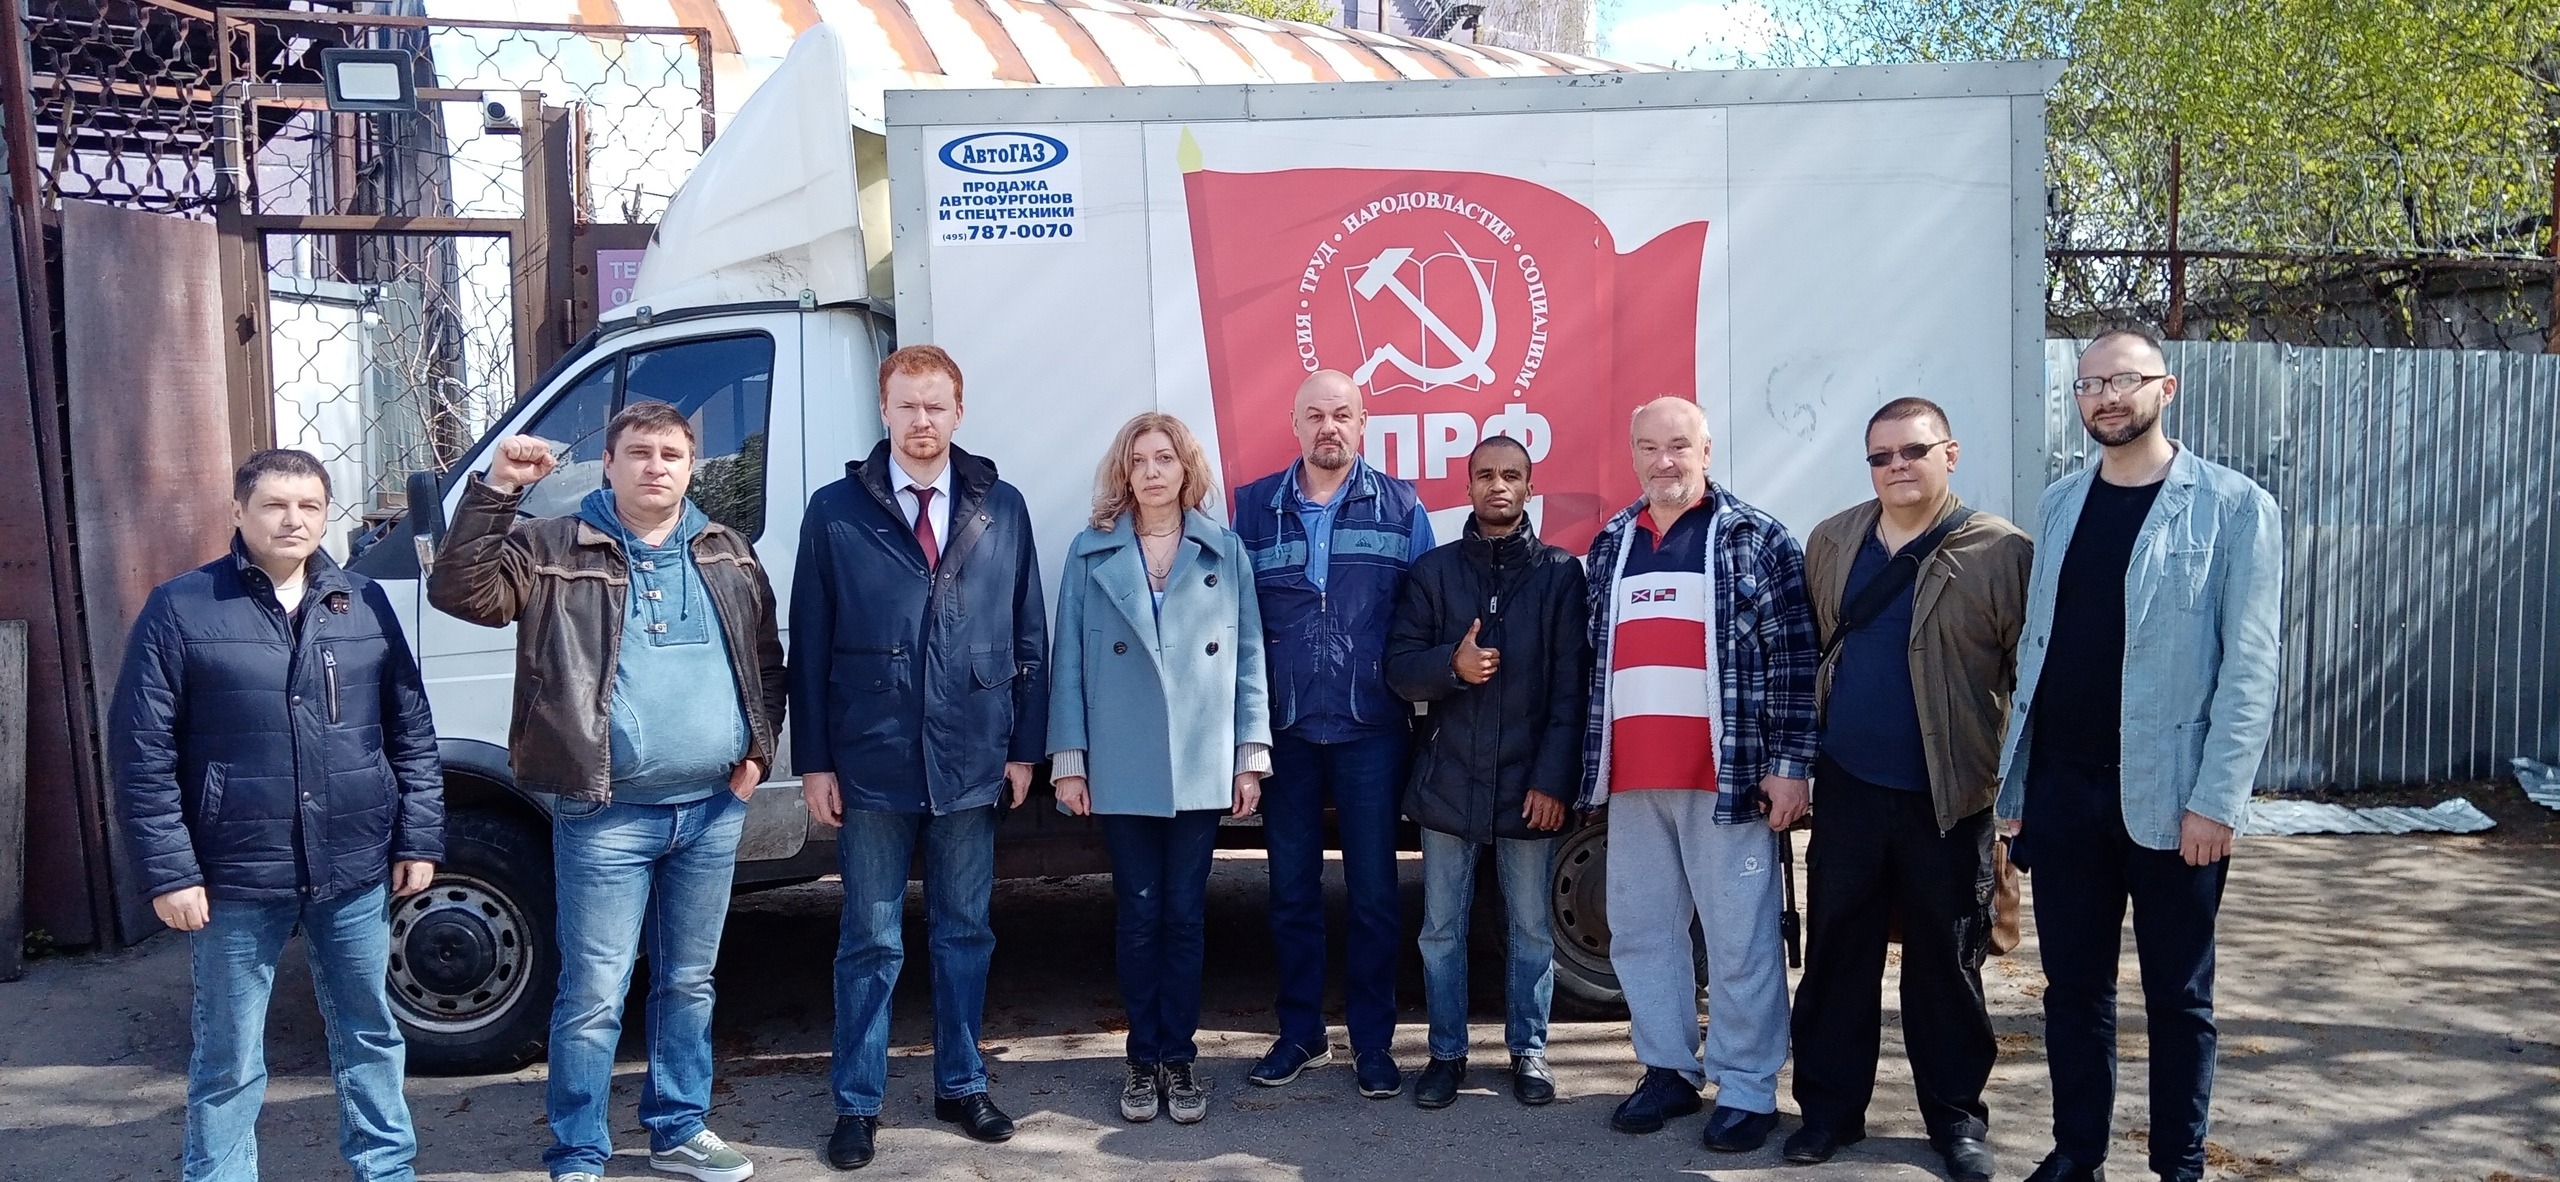 Денис Парфенов: «КПРФ снова обороняет фабрику от рейдеров»